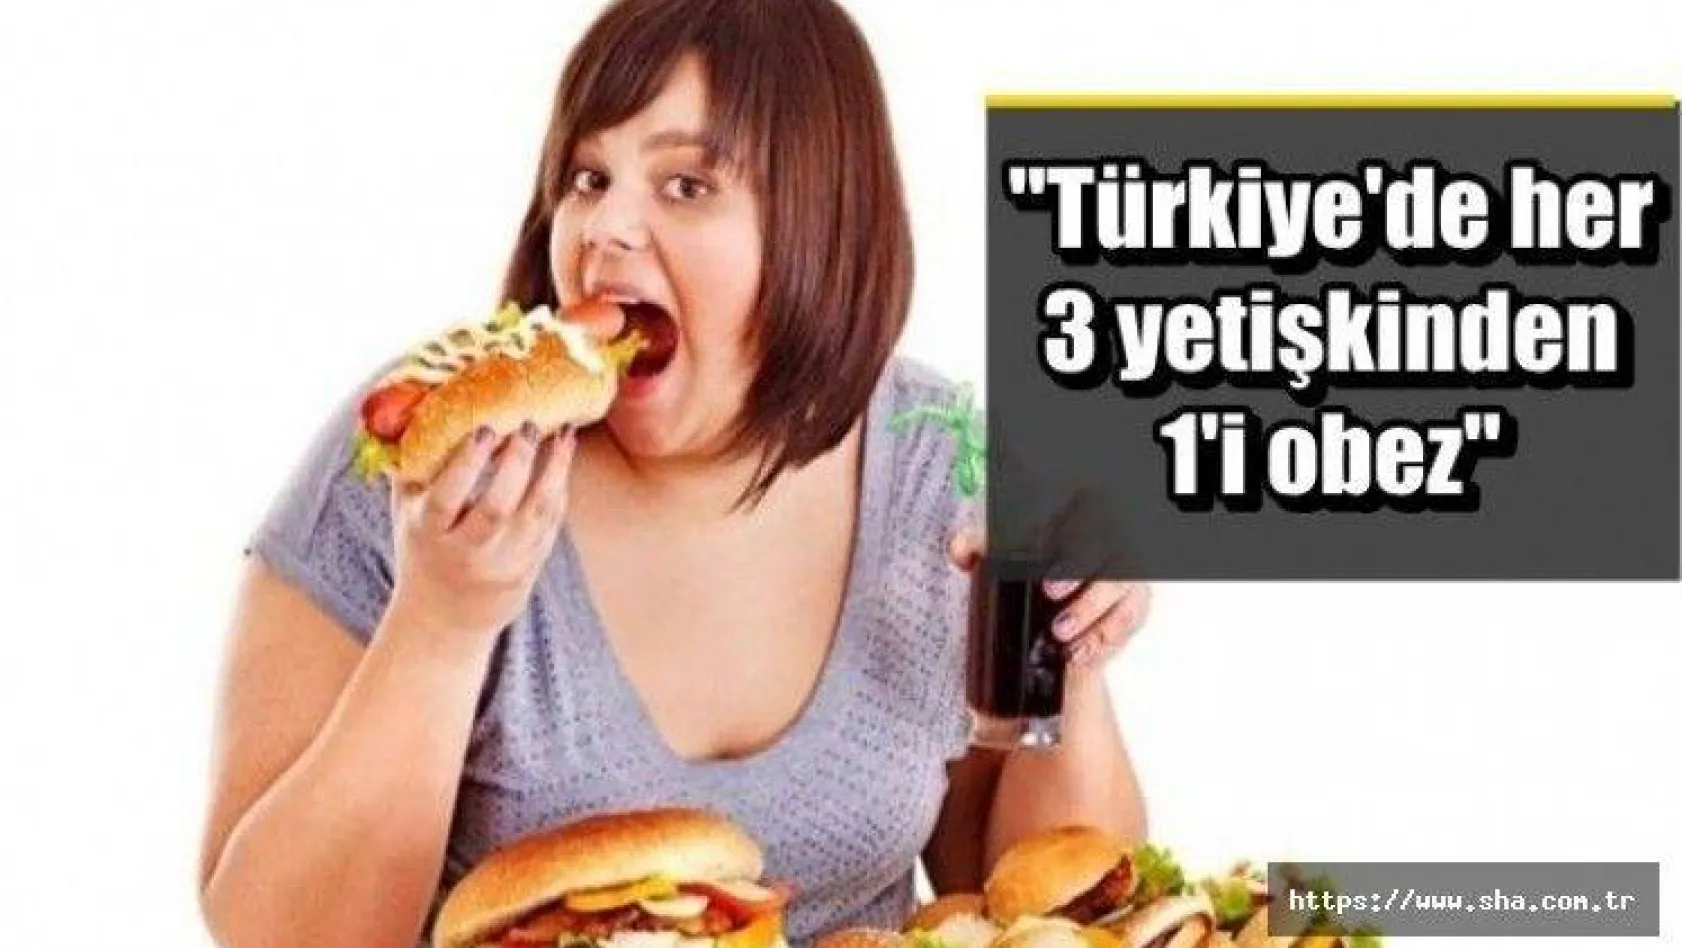 Avrupa ülkeleri arasında obezite görülme oranının en yüksek olduğu ülke Türkiye